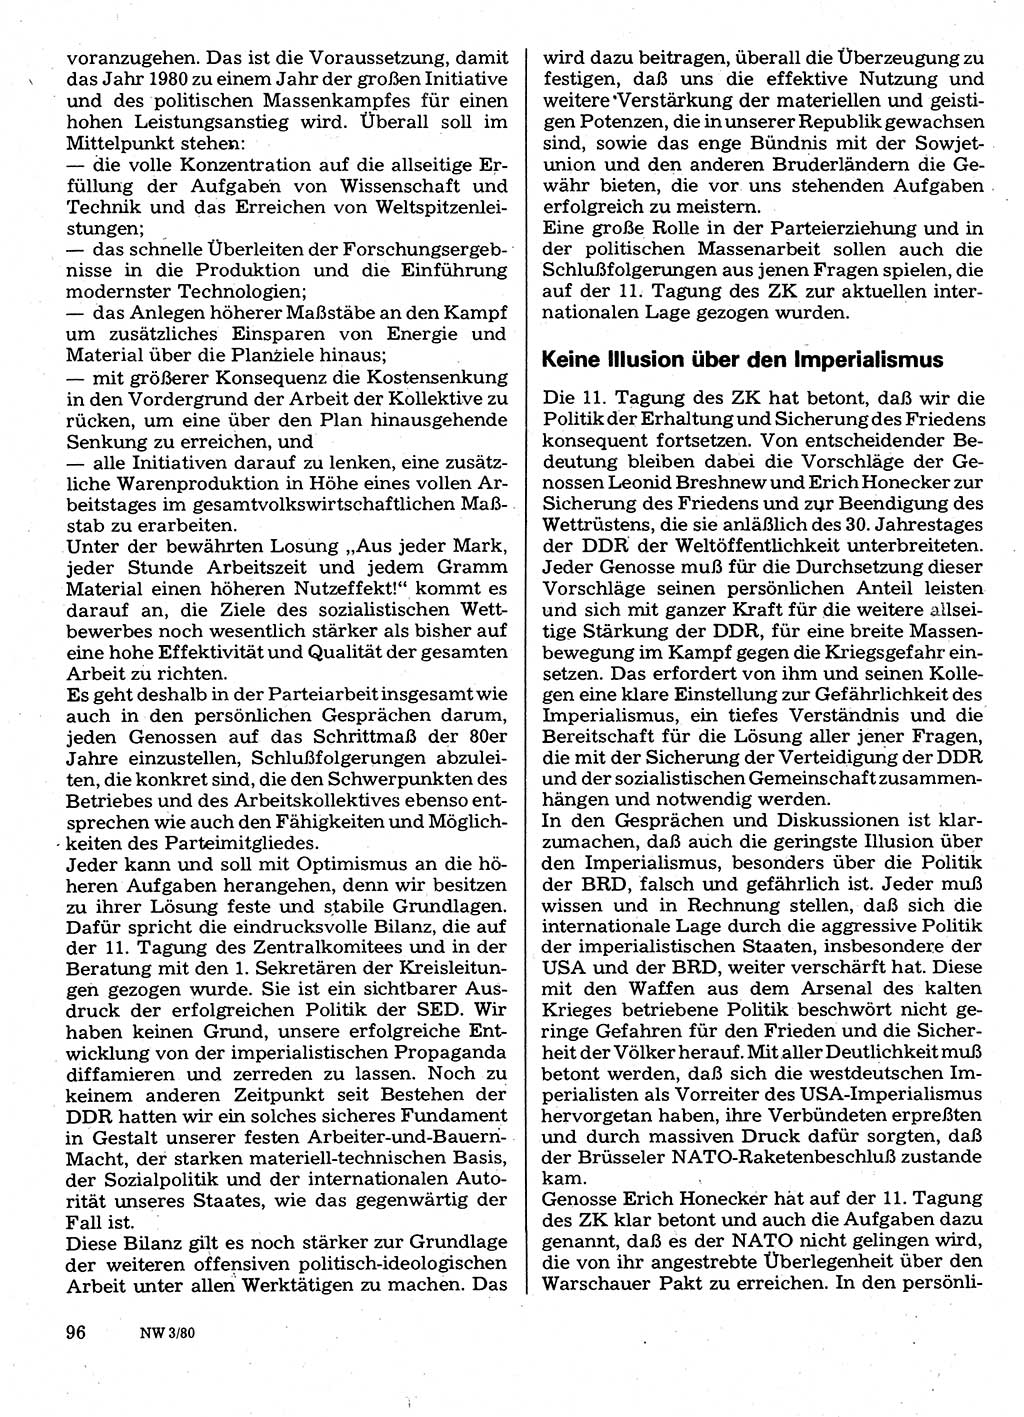 Neuer Weg (NW), Organ des Zentralkomitees (ZK) der SED (Sozialistische Einheitspartei Deutschlands) für Fragen des Parteilebens, 35. Jahrgang [Deutsche Demokratische Republik (DDR)] 1980, Seite 96 (NW ZK SED DDR 1980, S. 96)